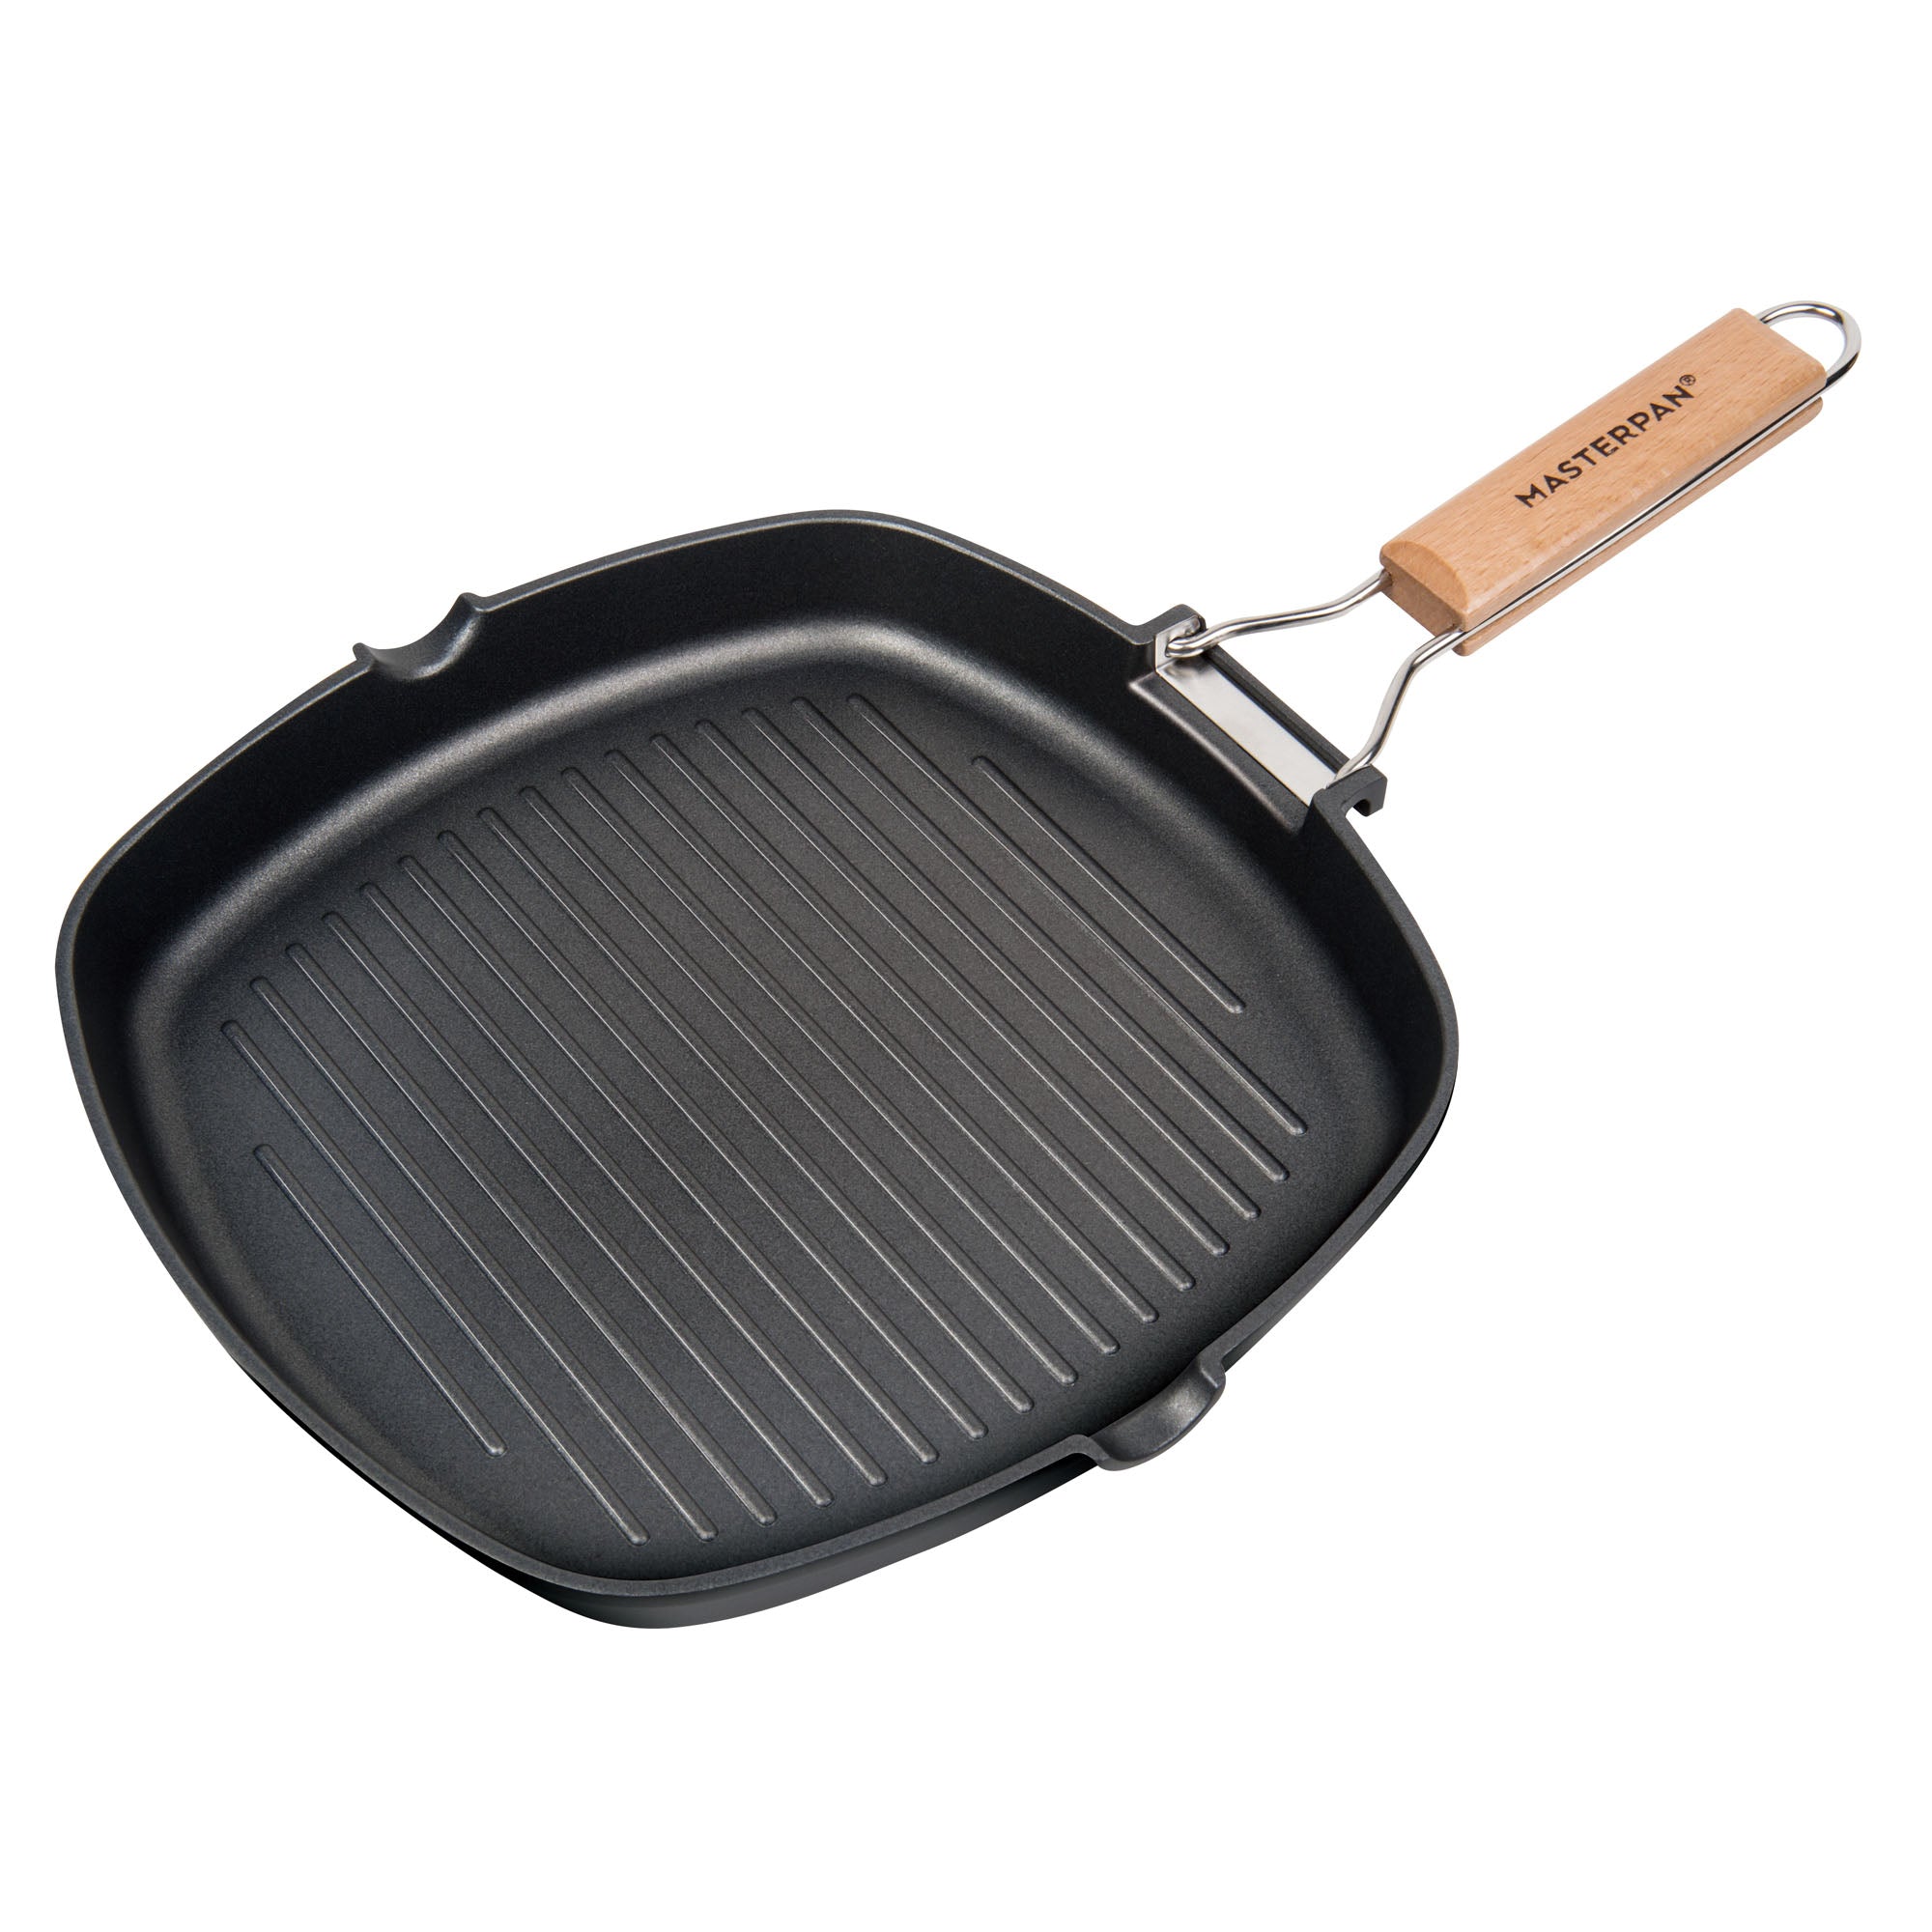 Copper Chef Copper Barbecue Grill Pan Griddle 12 X 18 X Design Non Stick  Pan 